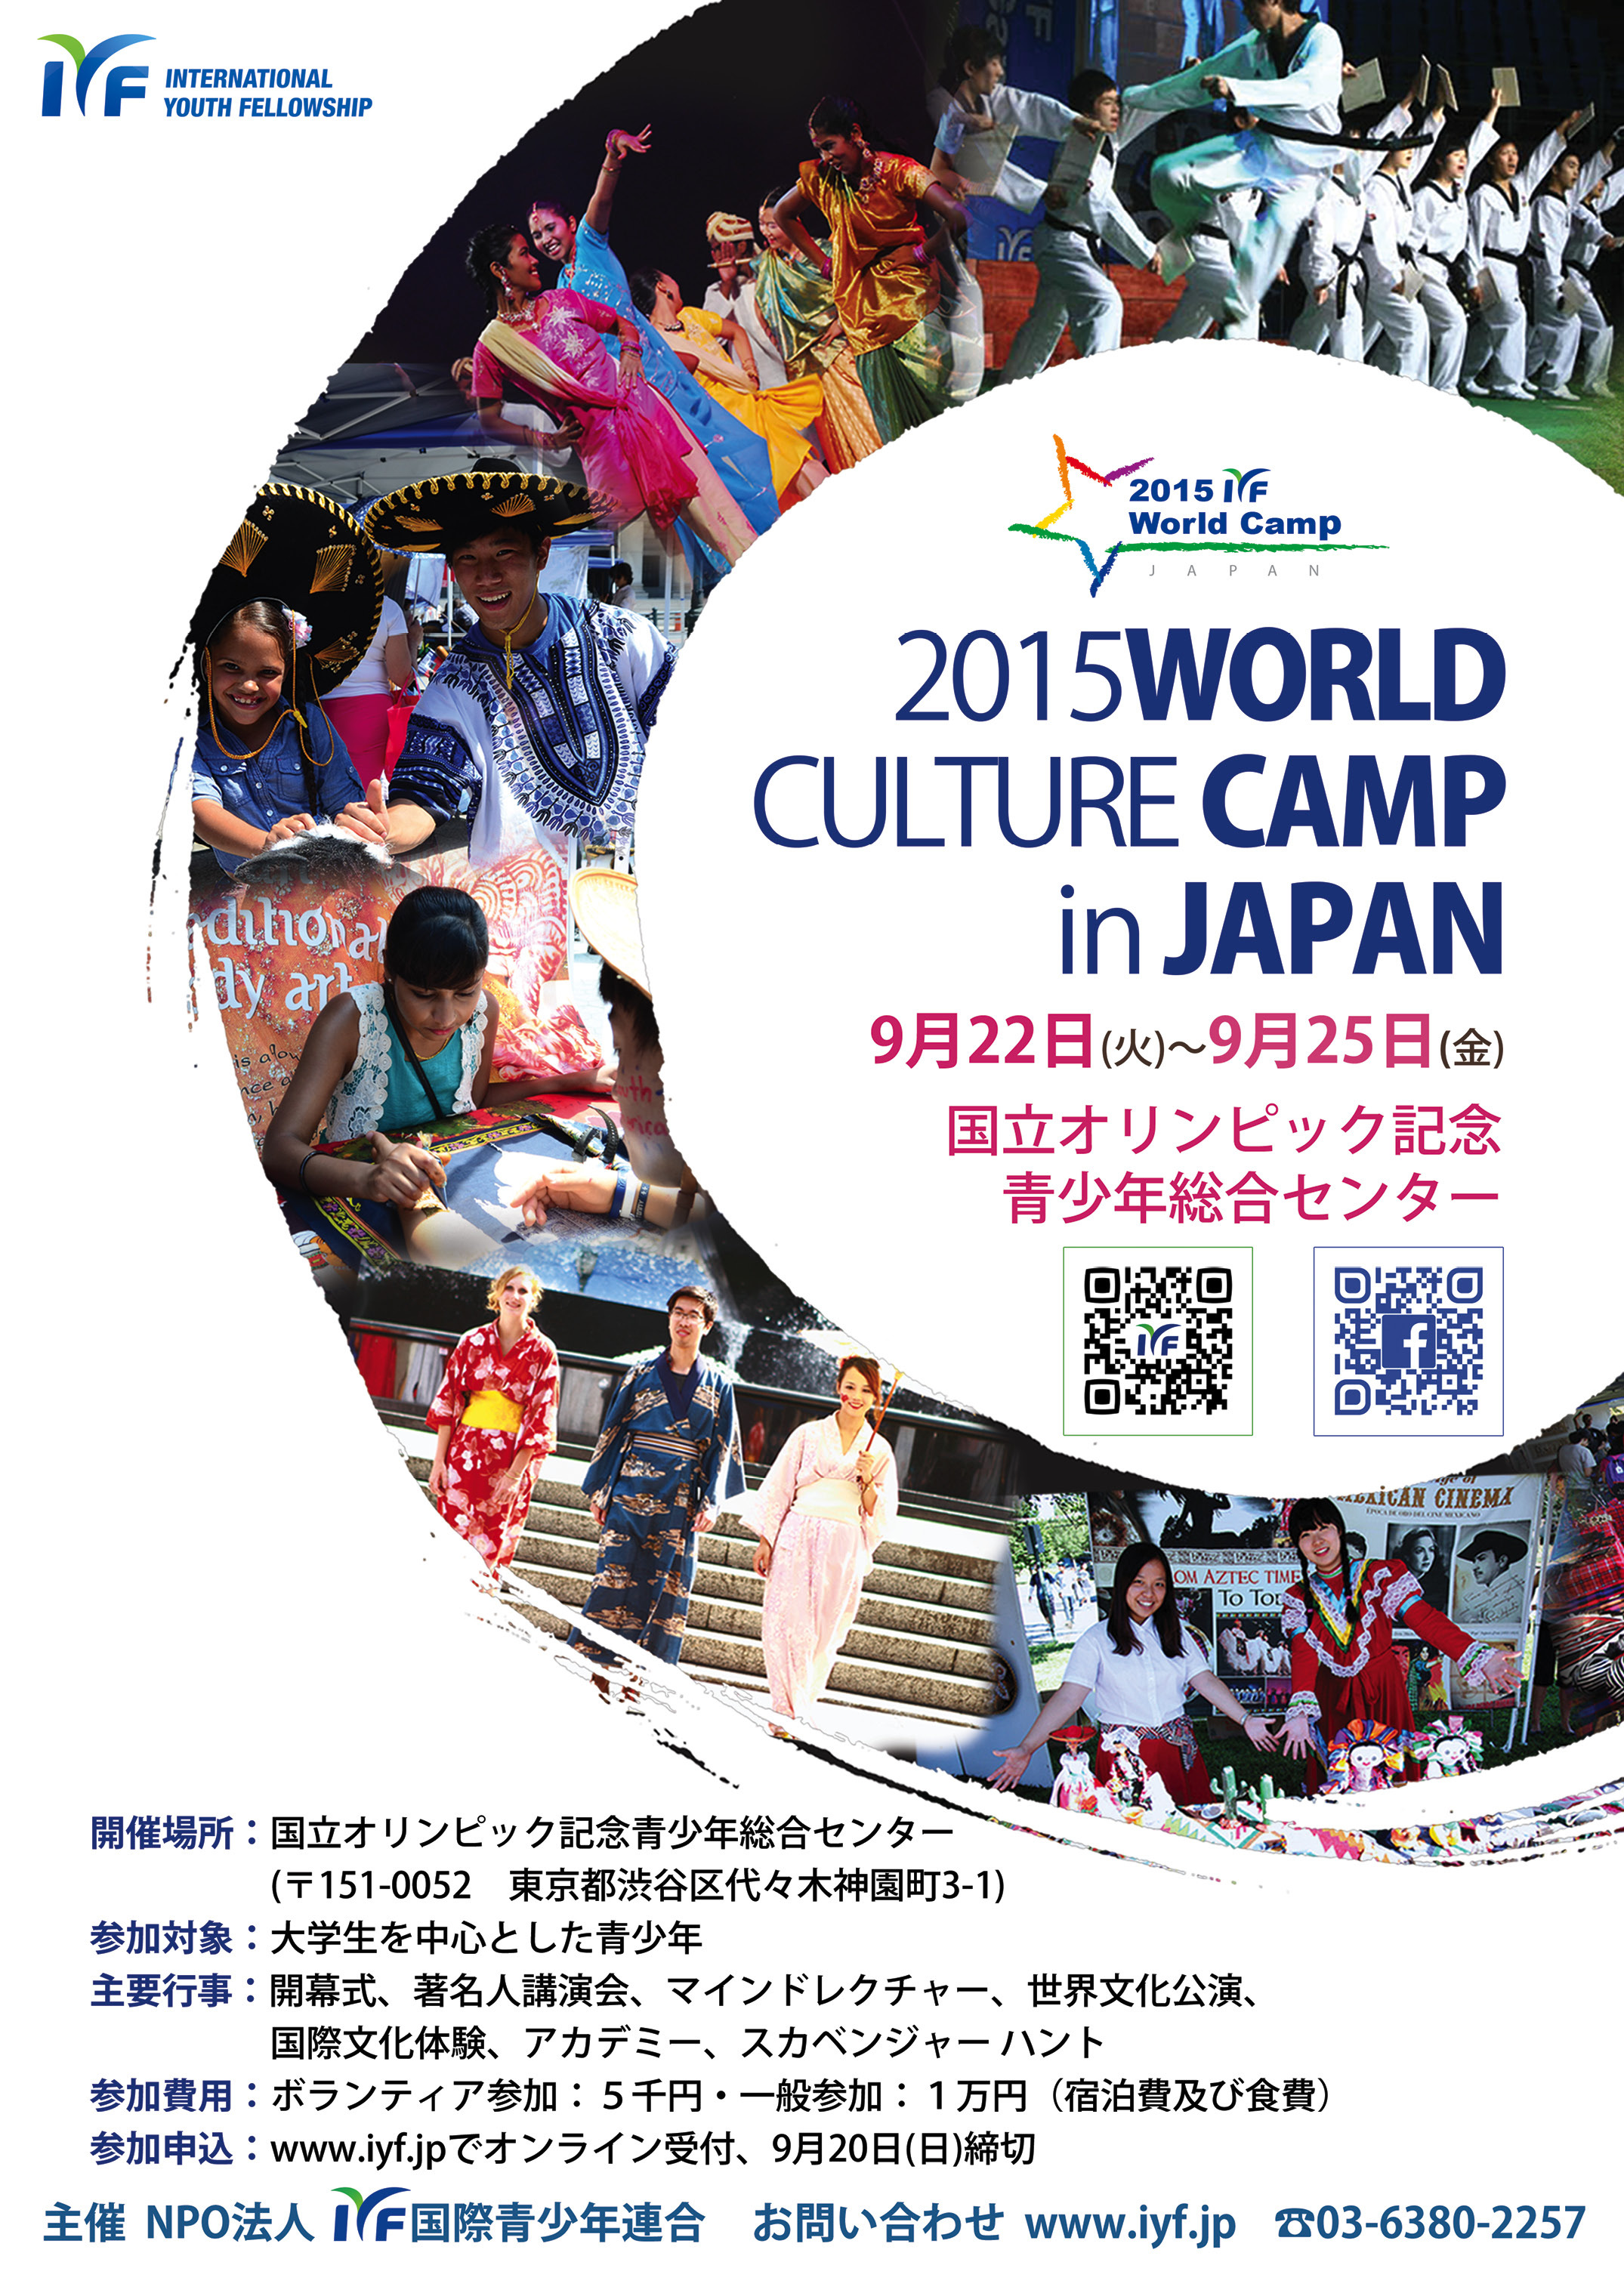 文化と言葉の壁を越えた世界の若者たちの交流の場 15 Iyf World Culture Camp In Japan 9月22日 25日開催 代々木 ボランティア学生 一般参加者 募集受付中 特定非営利活動法人 国際青少年連合のプレスリリース